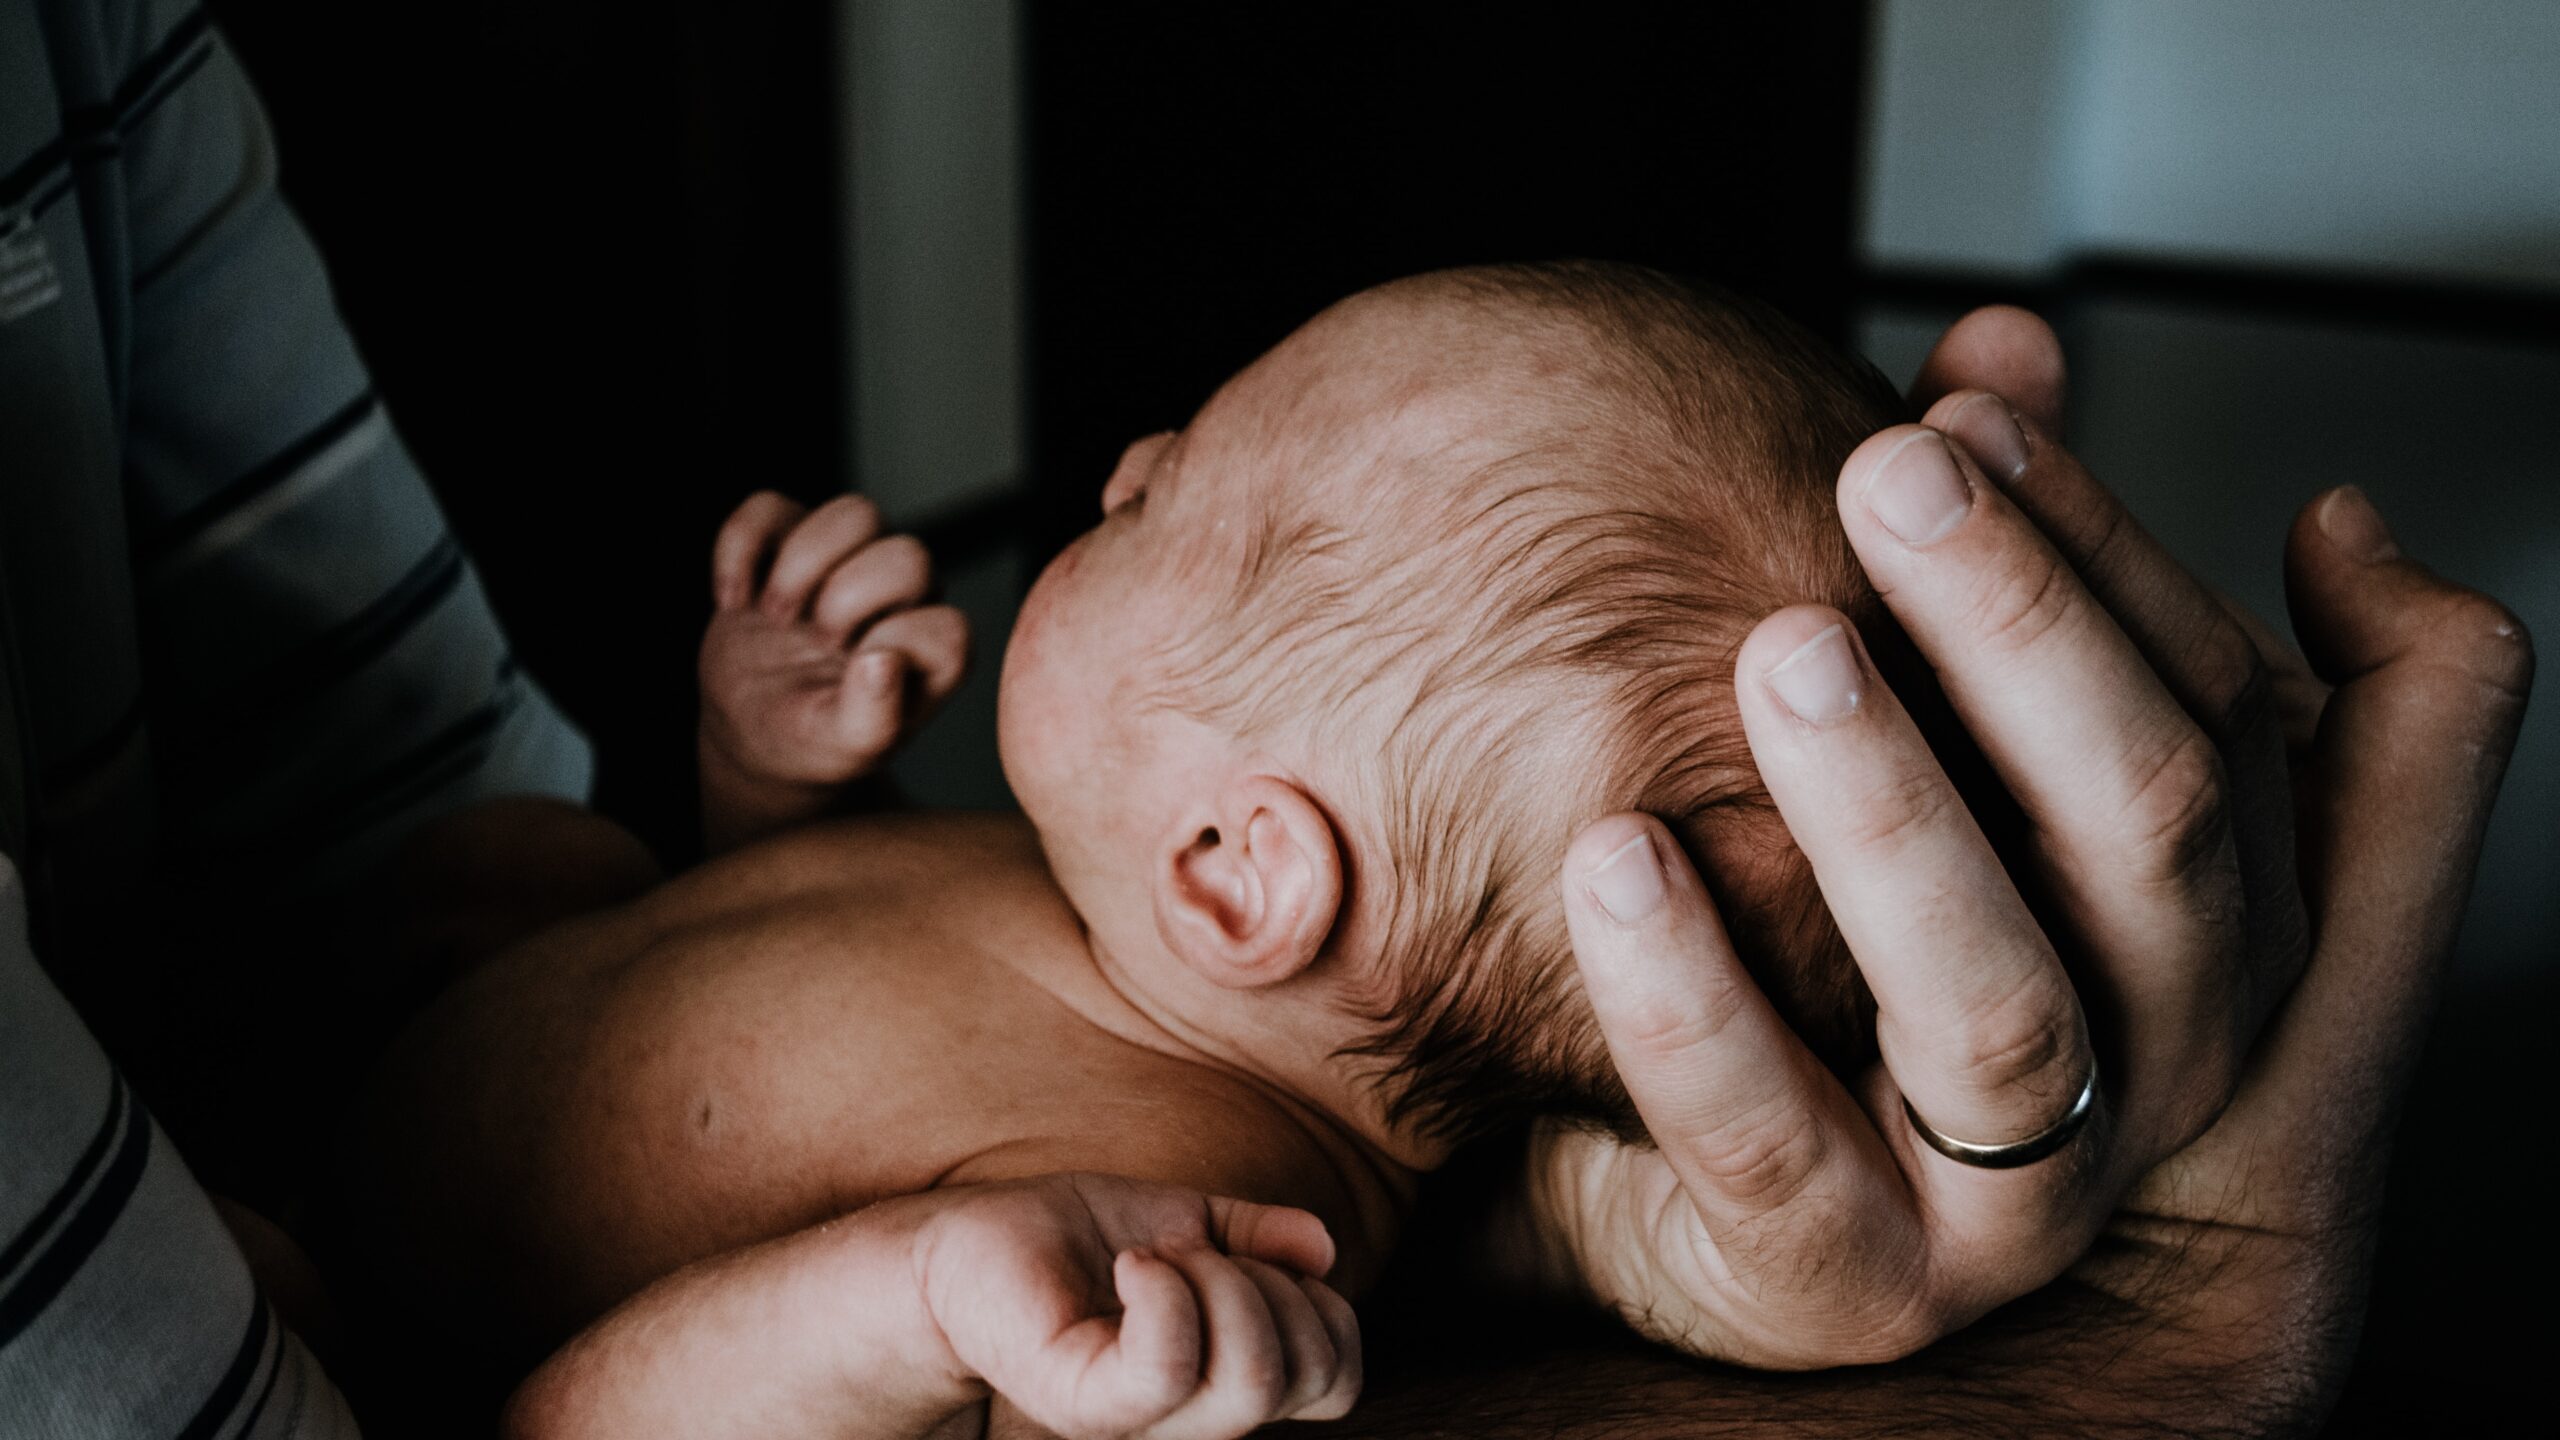 newborn baby in parents' hands